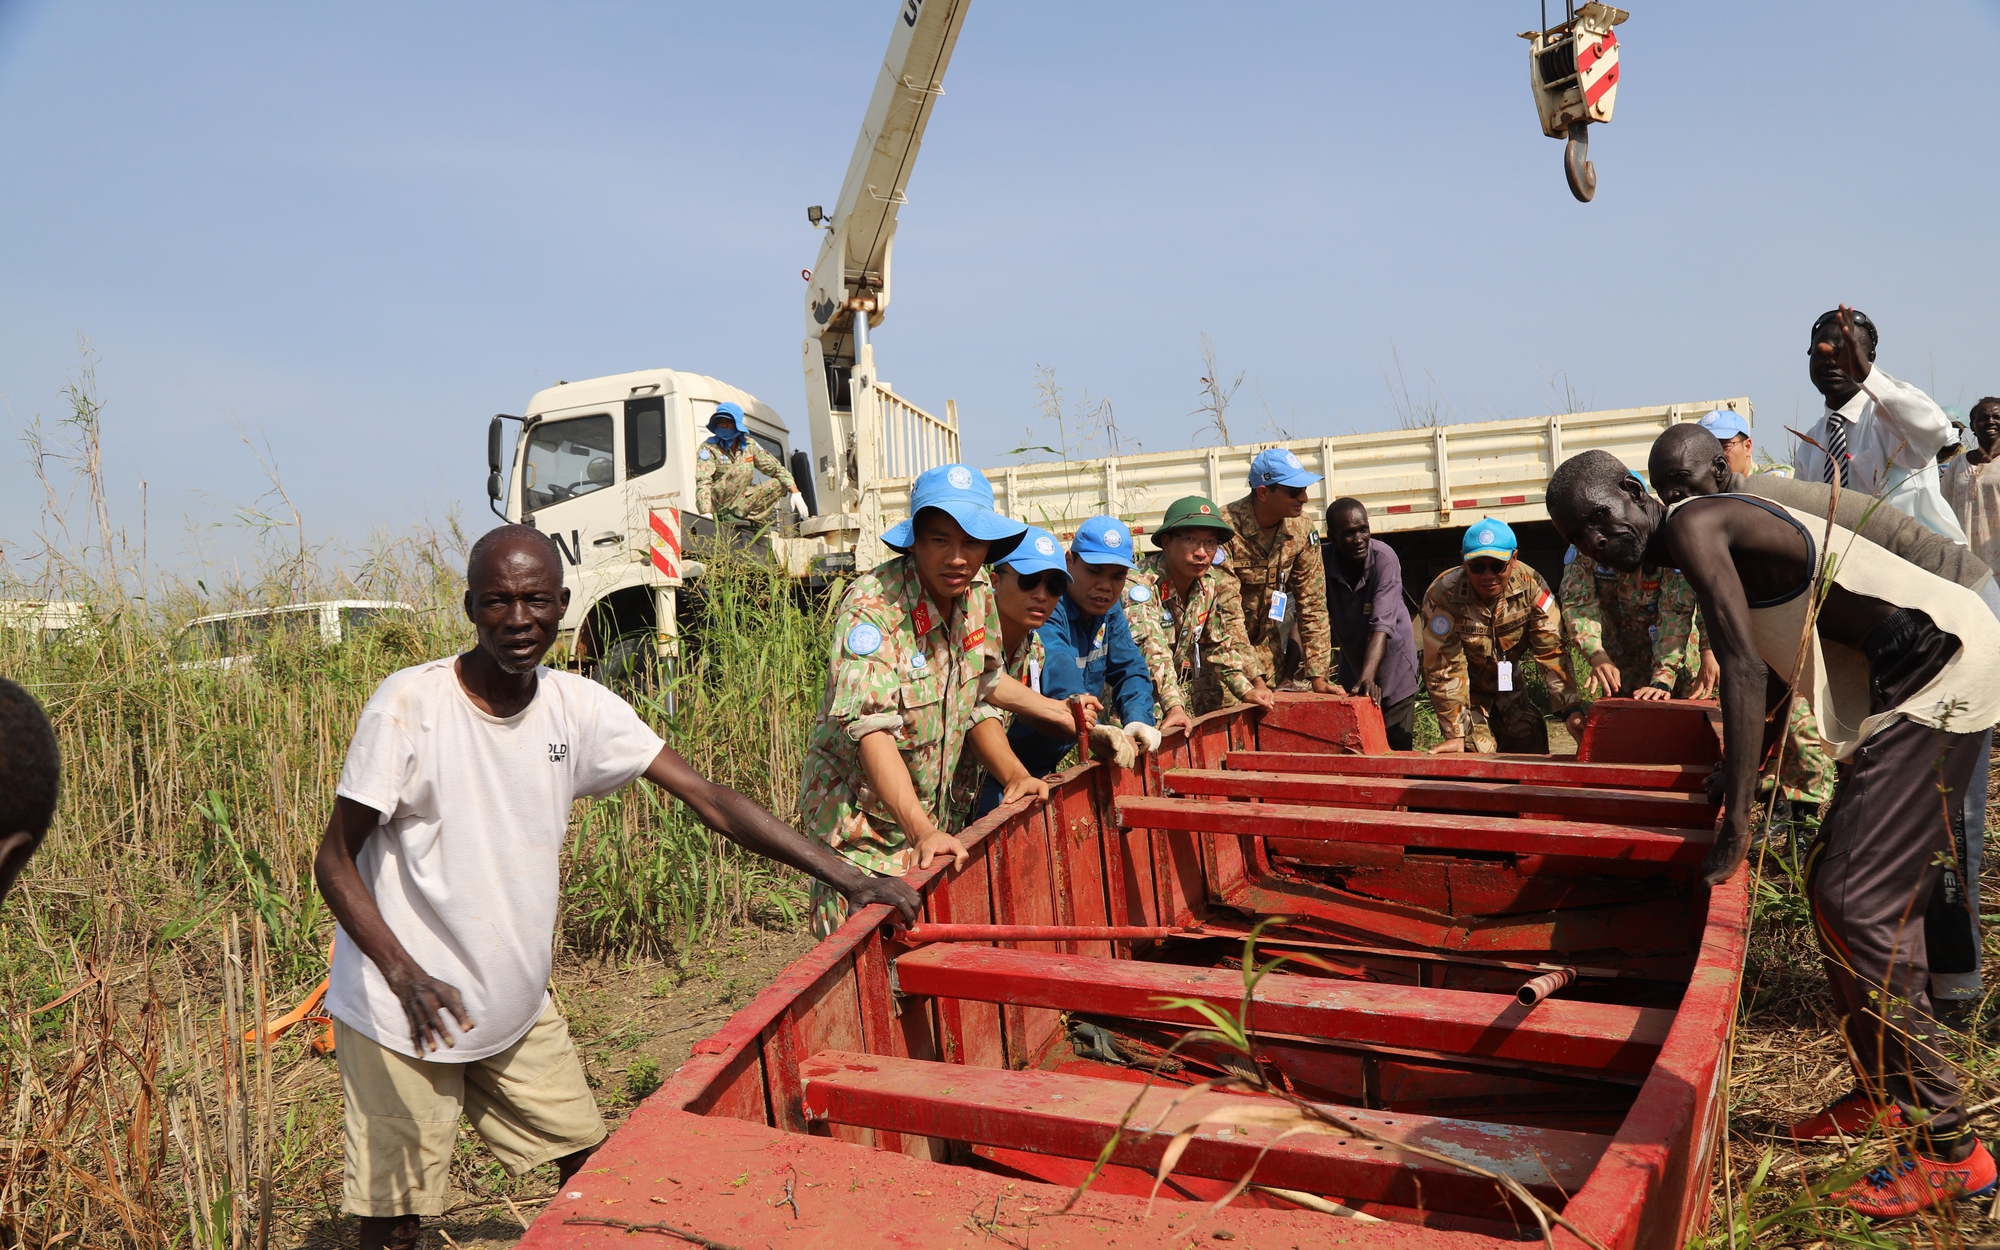 Đội công binh tranh thủ ngày nghỉ cuối tuần hỗ trợ người dân Abyei